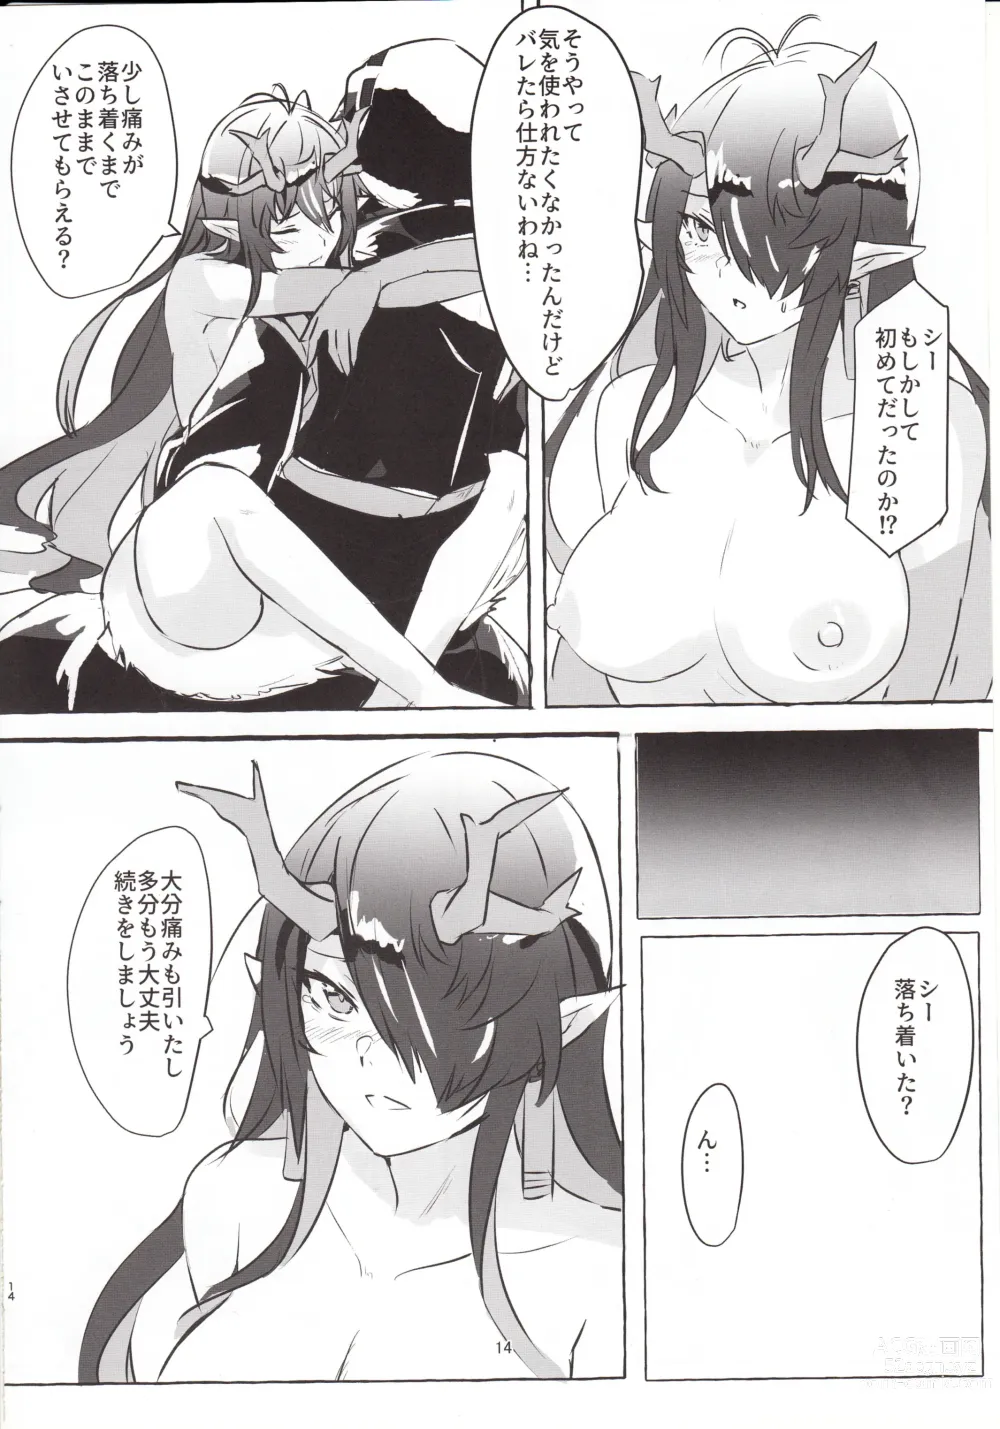 Page 13 of doujinshi Kyoshou no Dusk wa Are ga Mitai!